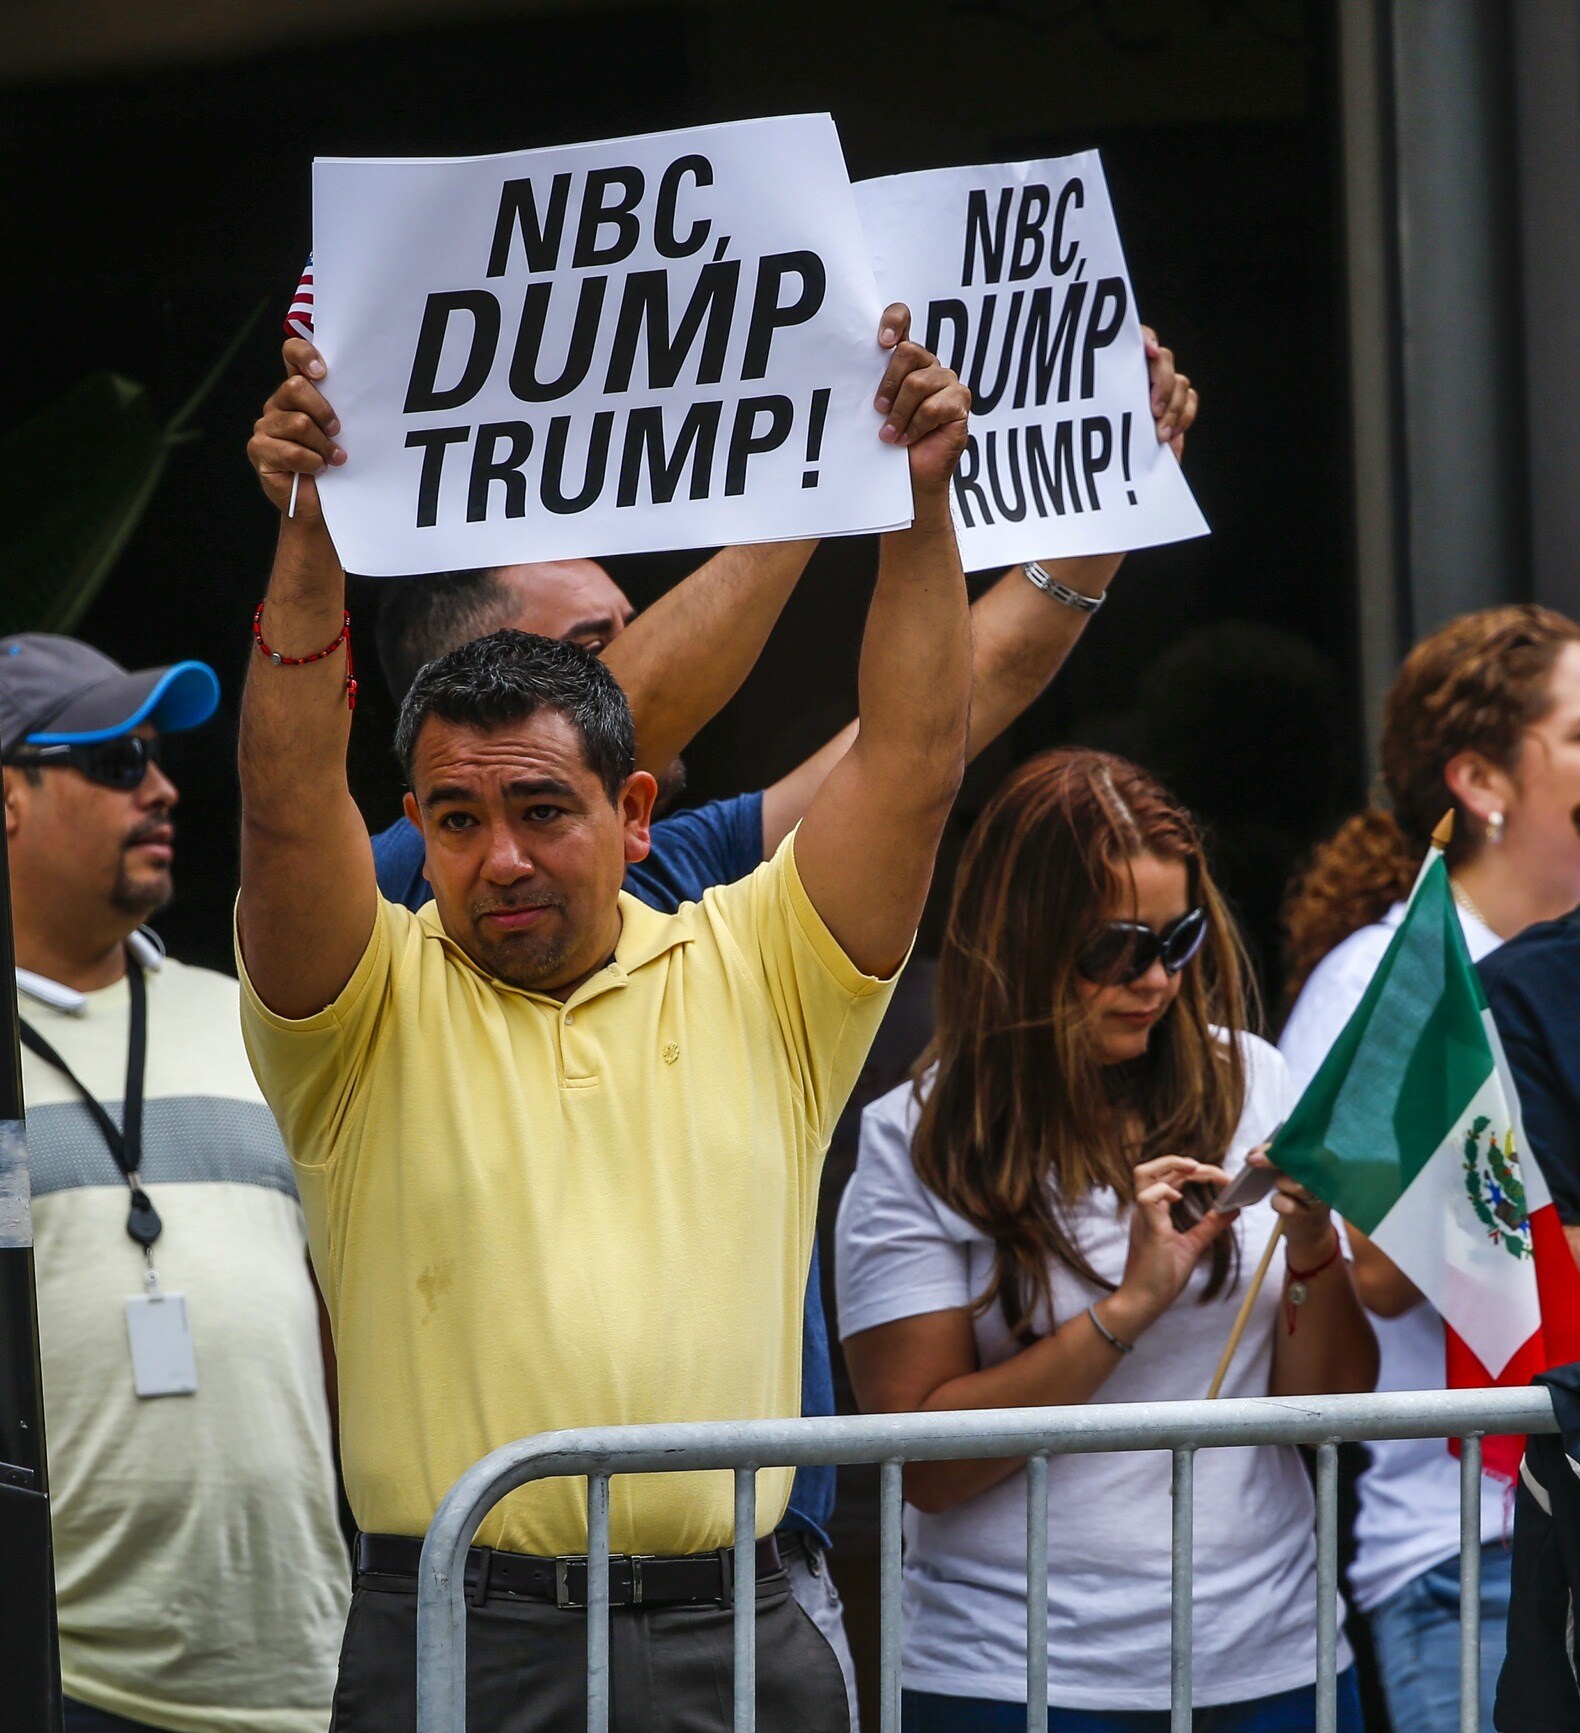 NBC breekt met Trump na uitspraken over Mexicanen